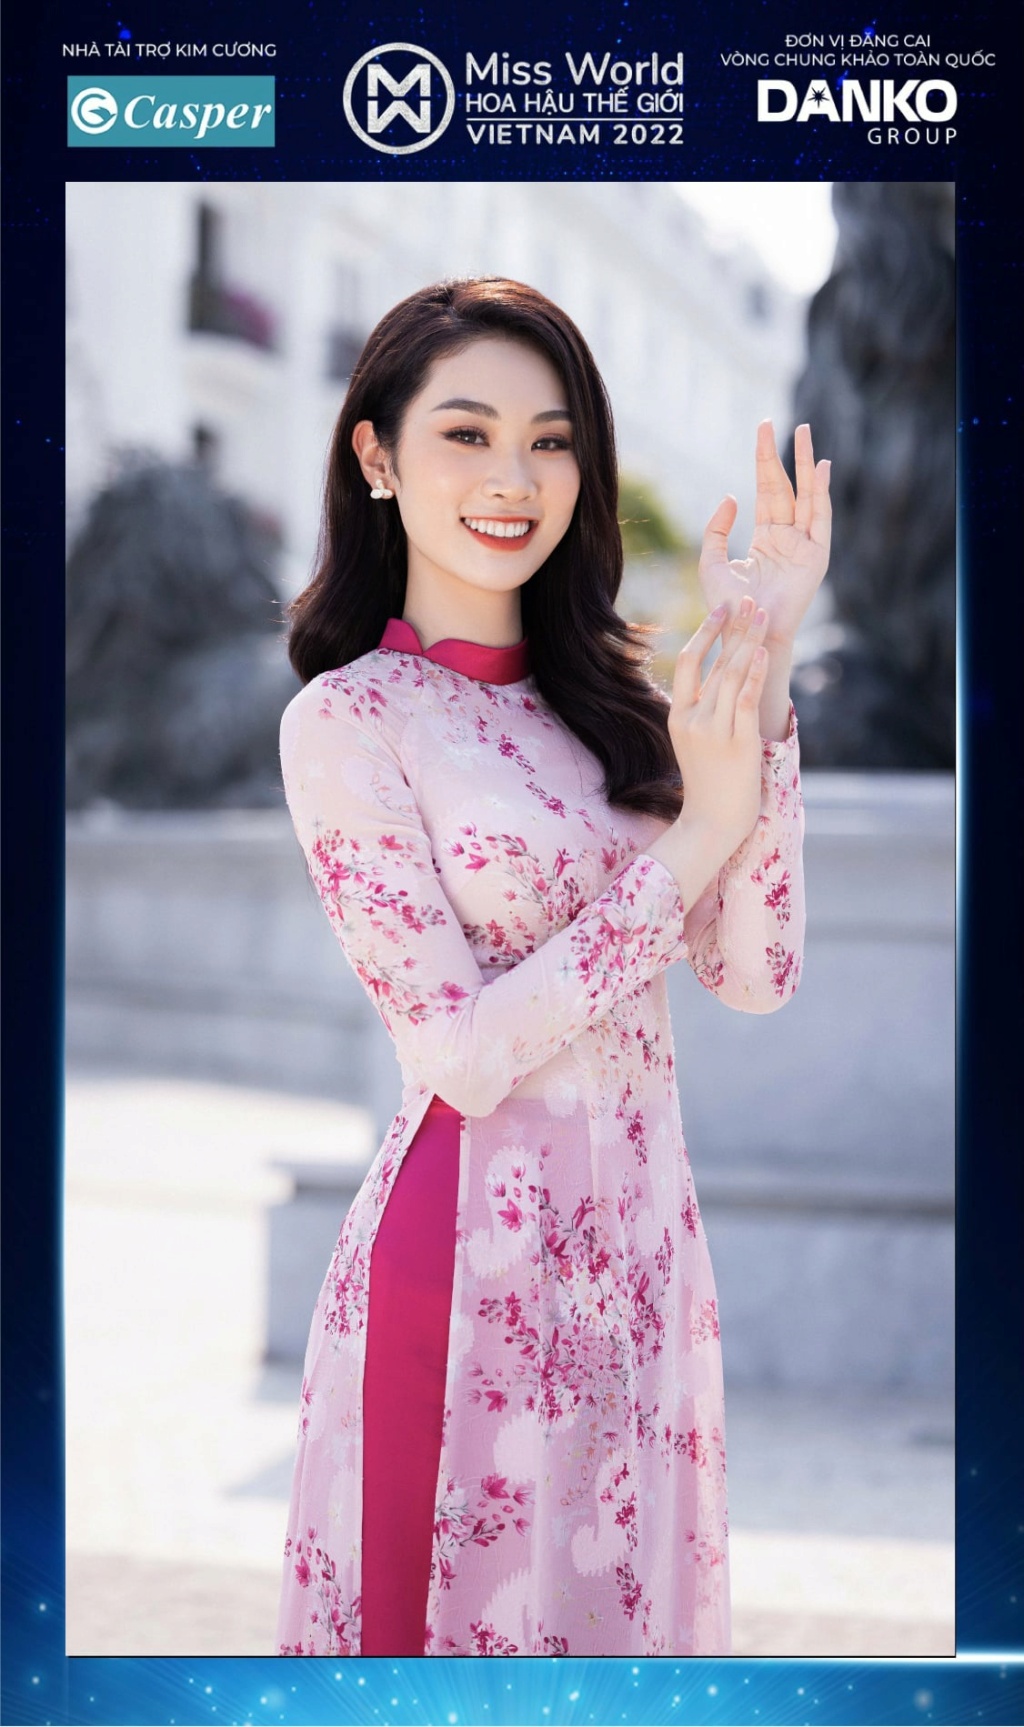 Miss World Vietnam 2022 27916410